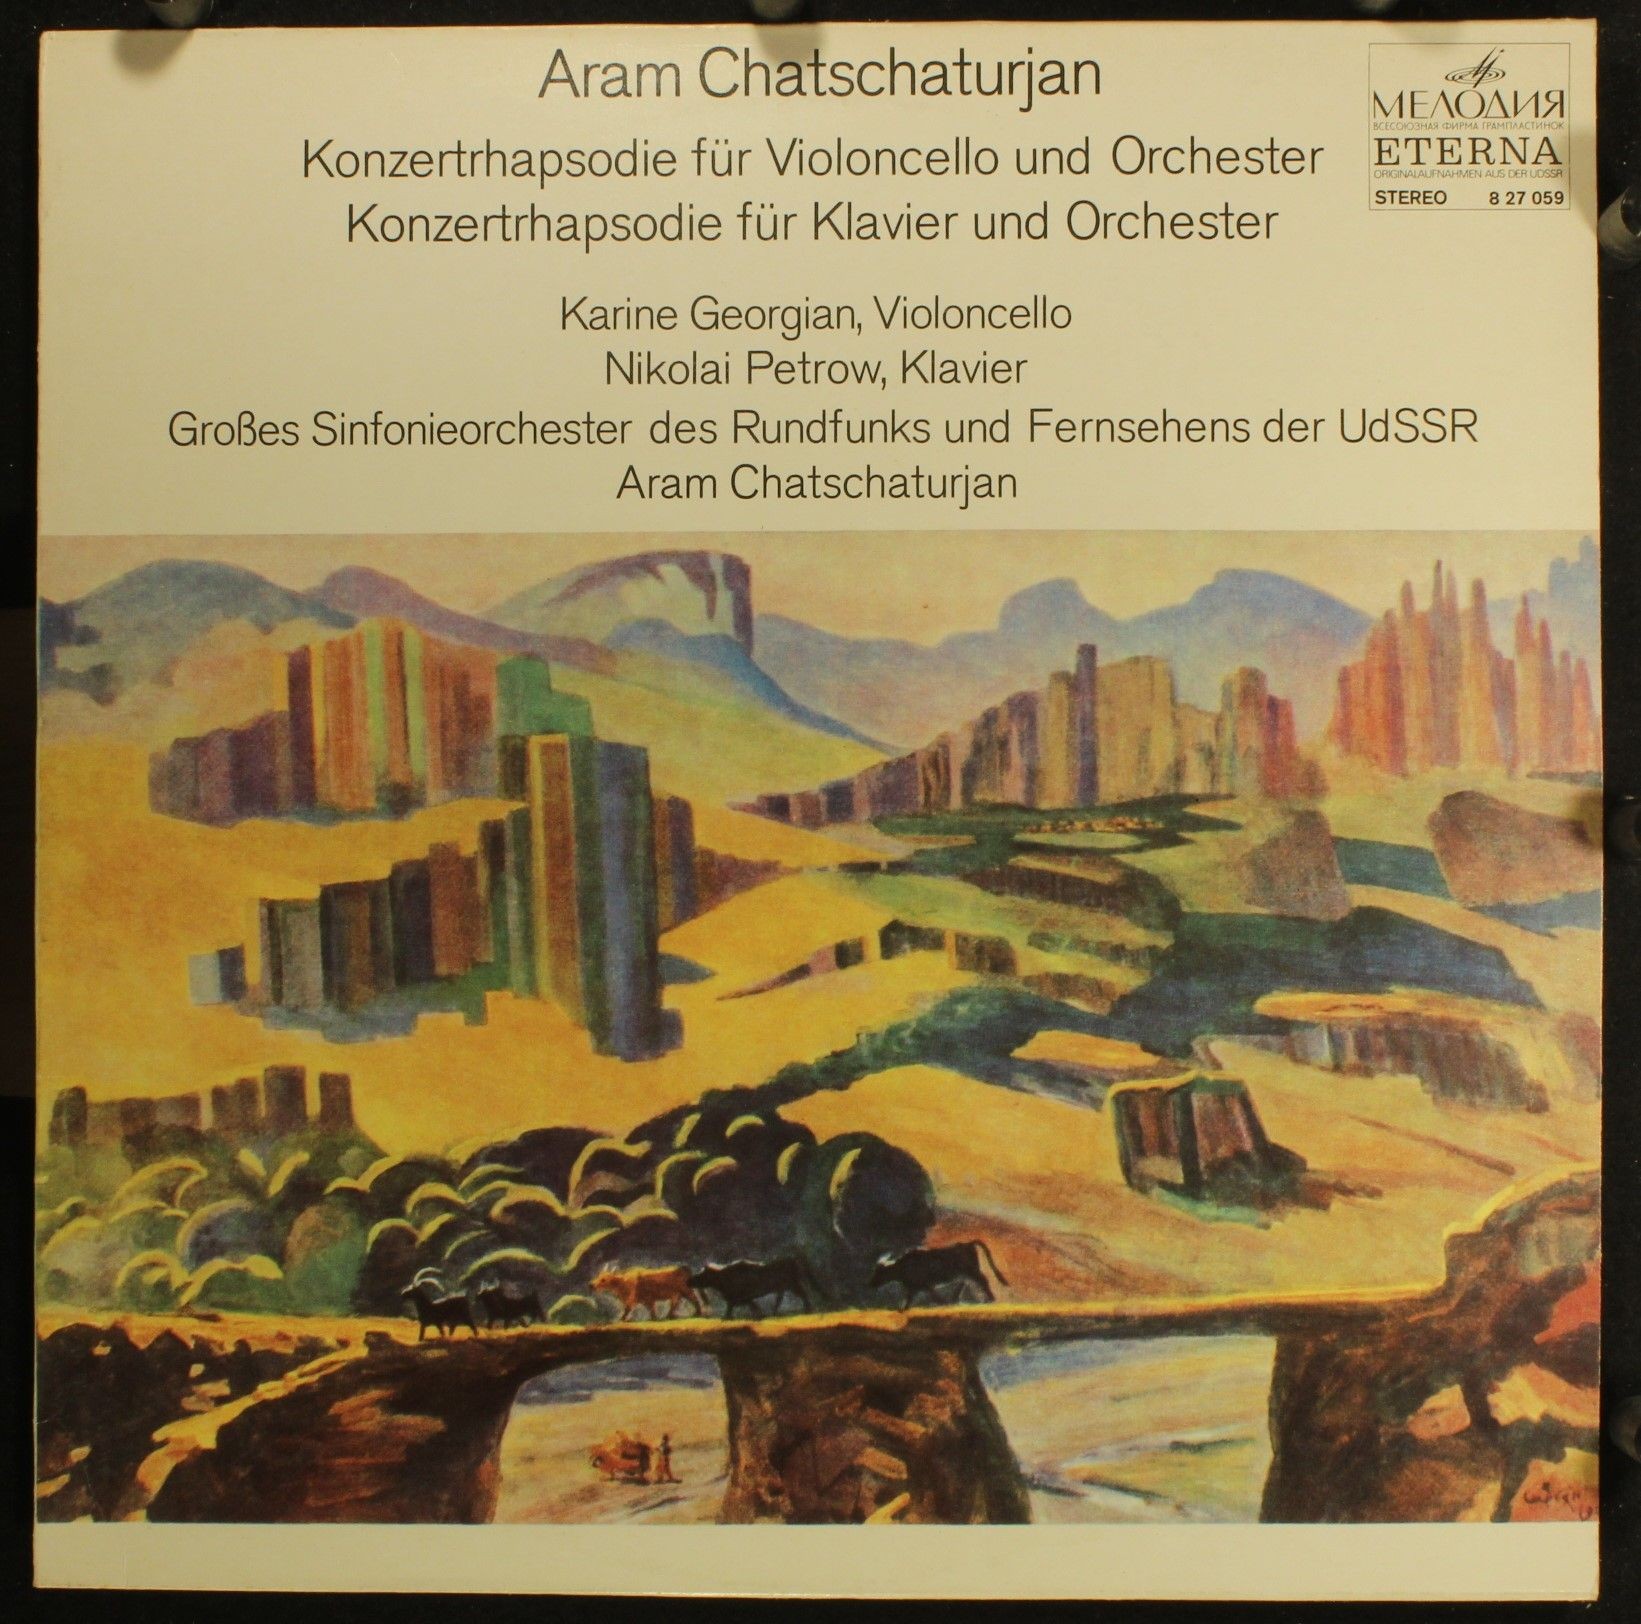 Арам Хачатурян: Два концерта-рапсодии